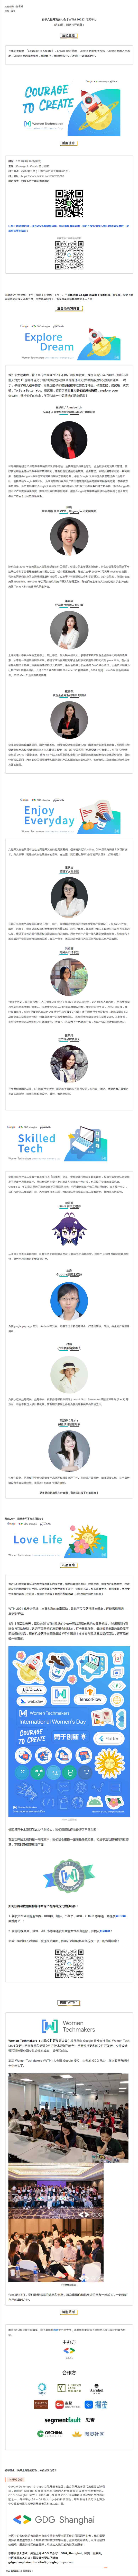 【线上】谷歌女性开发者大会-Women-Techmakers-#IWD2021-预约报名-上海GDG.jpg